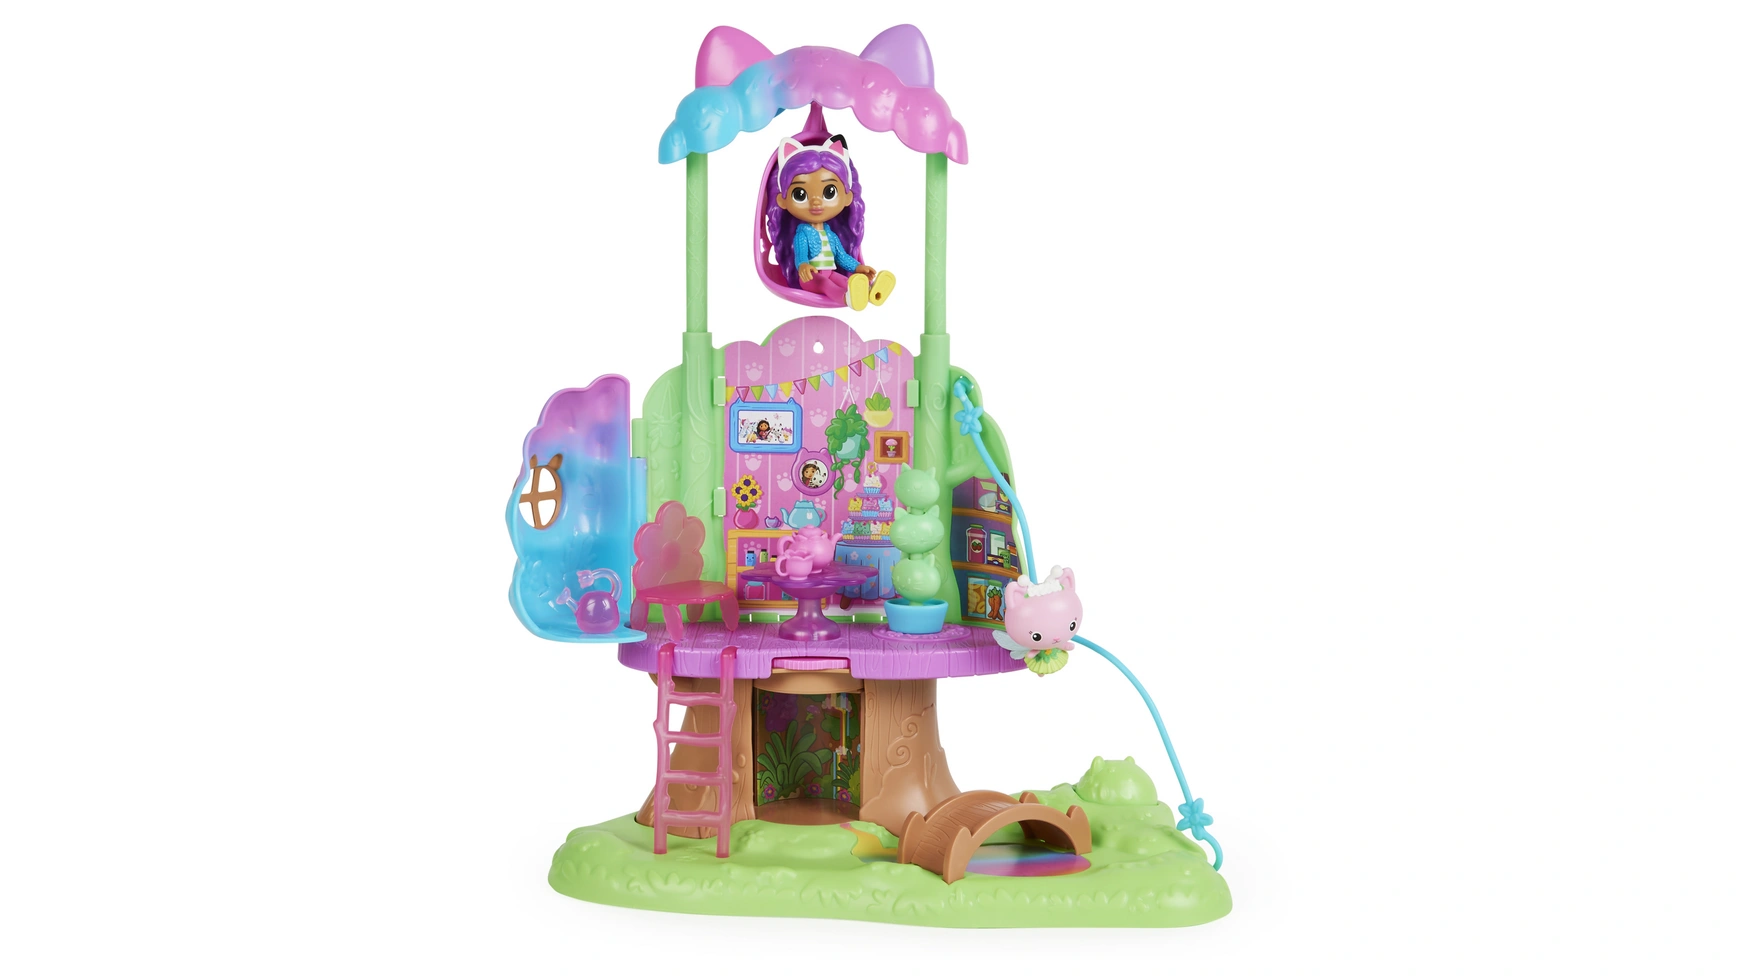 Gabbys Dollhouse Spin Master Садовый игровой набор Kitty Fairy трансформируемый домик на дереве с фигуркой Габби и кошки настольная игра spin master диван ворчун 6058672